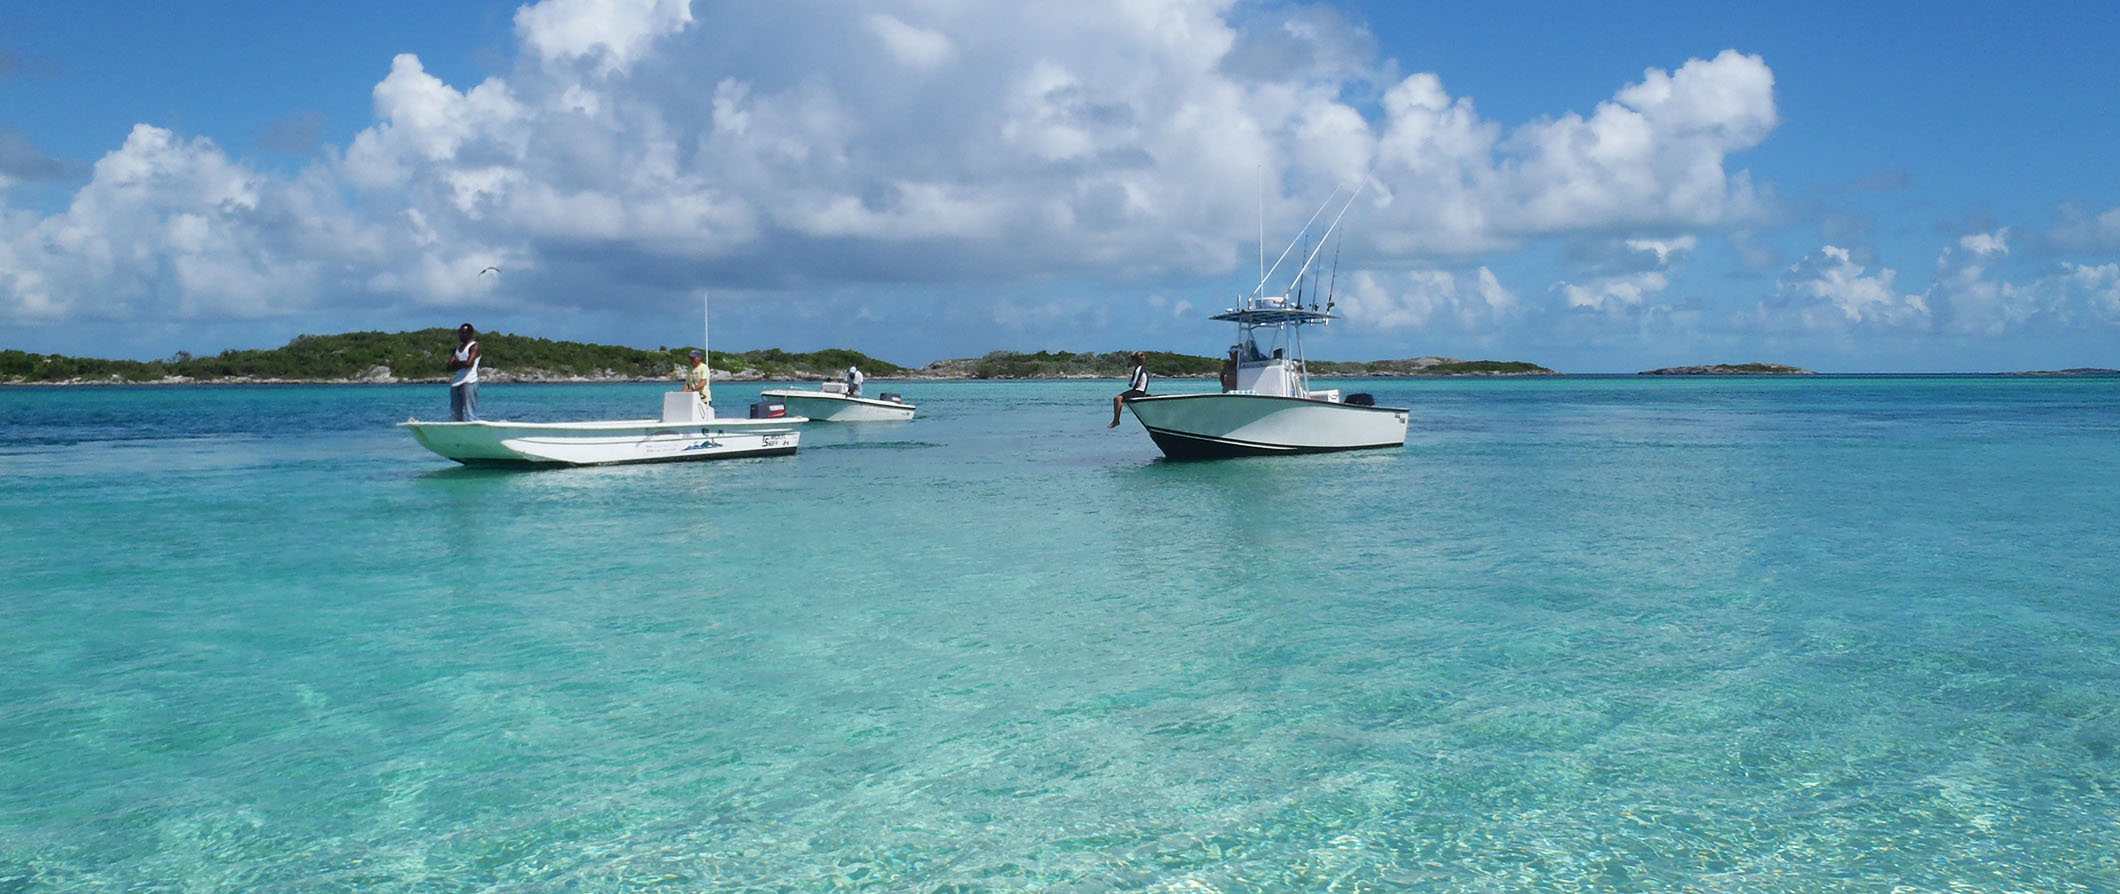 Pessoas pescando em barcos nas Bahamas